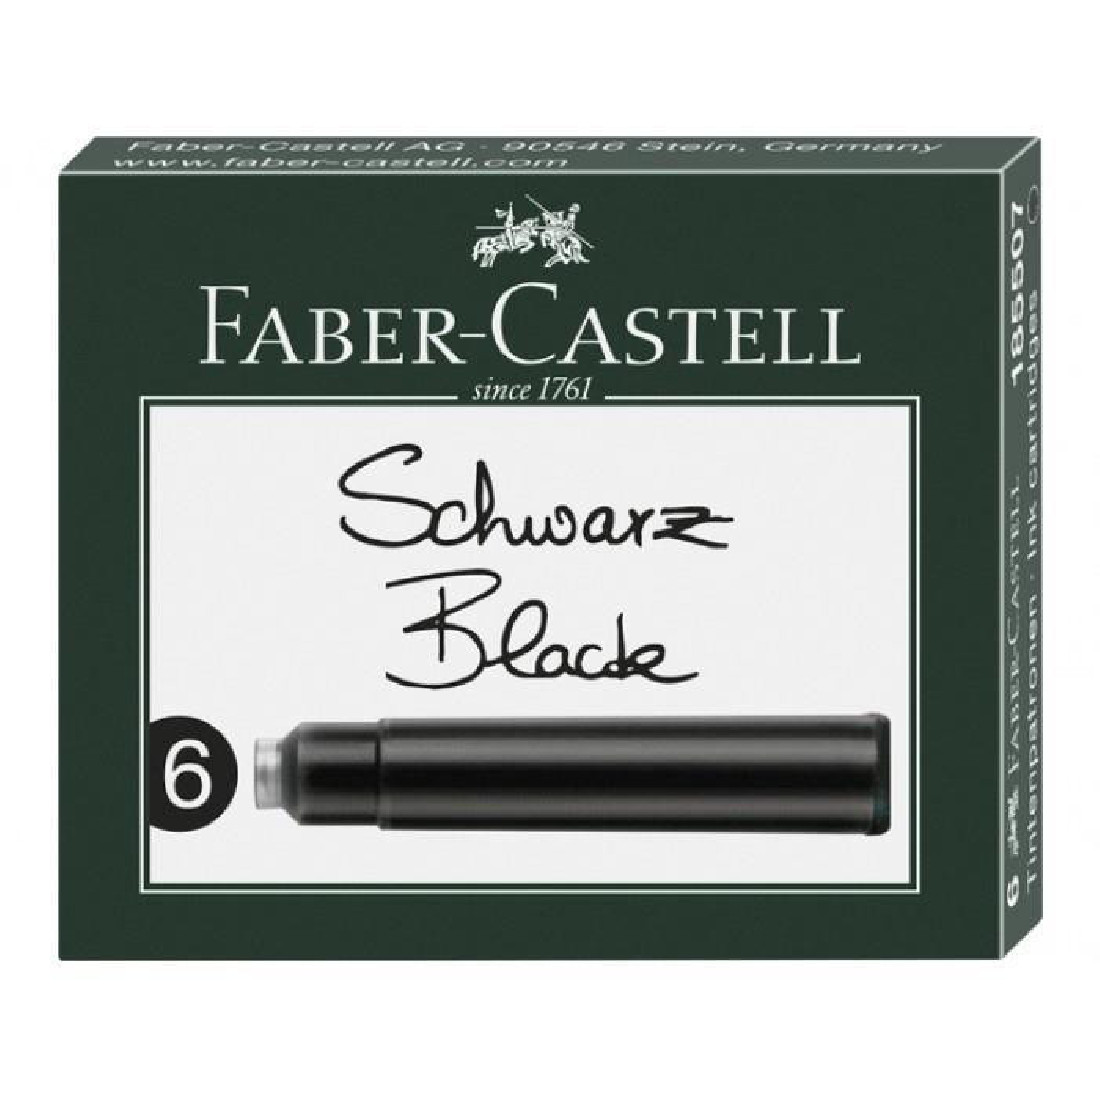 FABER CASTELL  INK CARTRIDGES(6) BLACK 185507